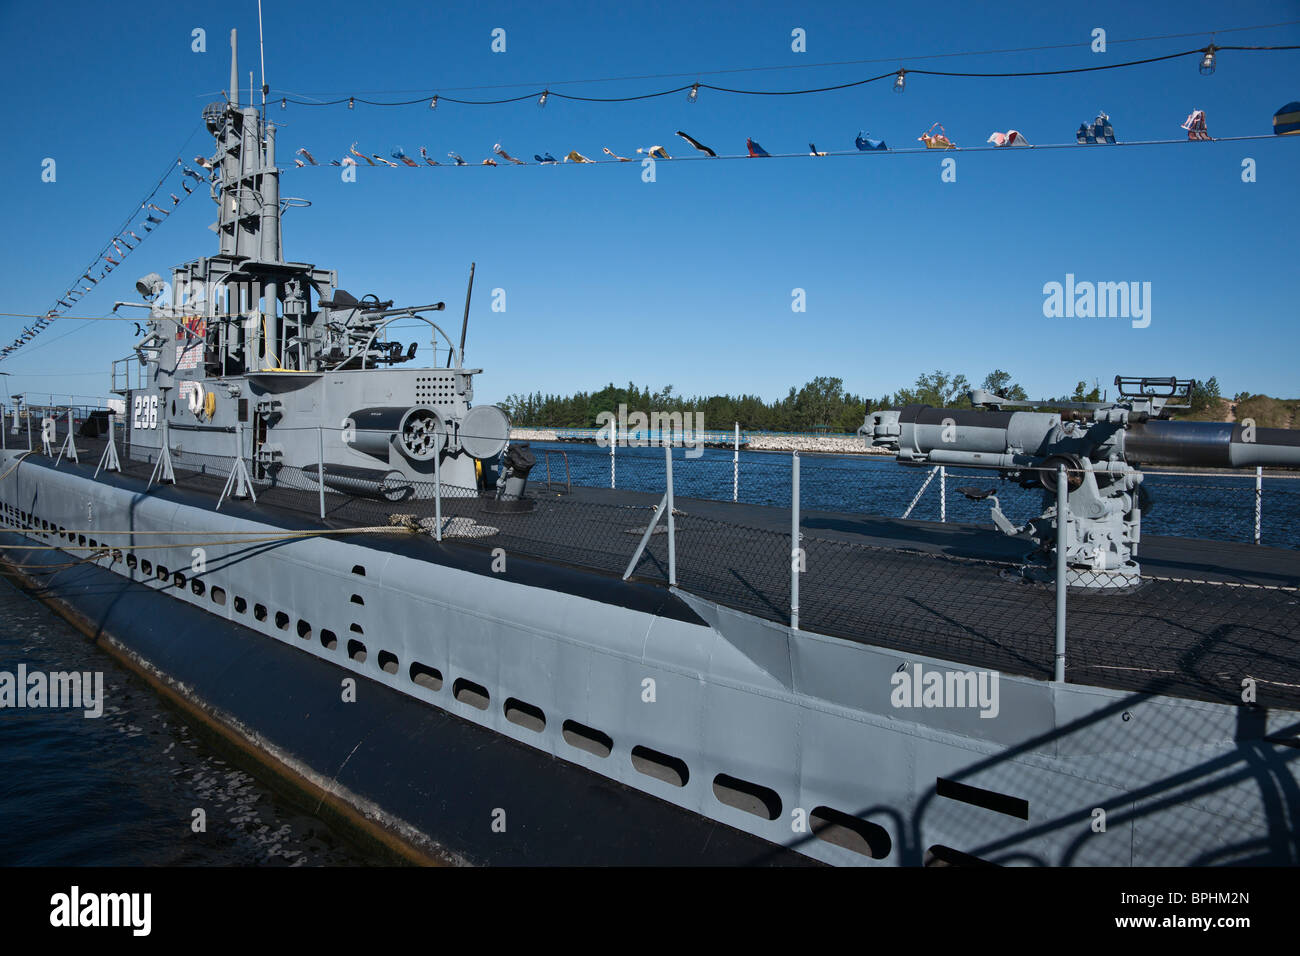 United States Navy seconda guerra mondiale sottomarino classe Gato USS Silversides in mostra a Muskegon Michigan nessuno ad alta risoluzione Foto Stock